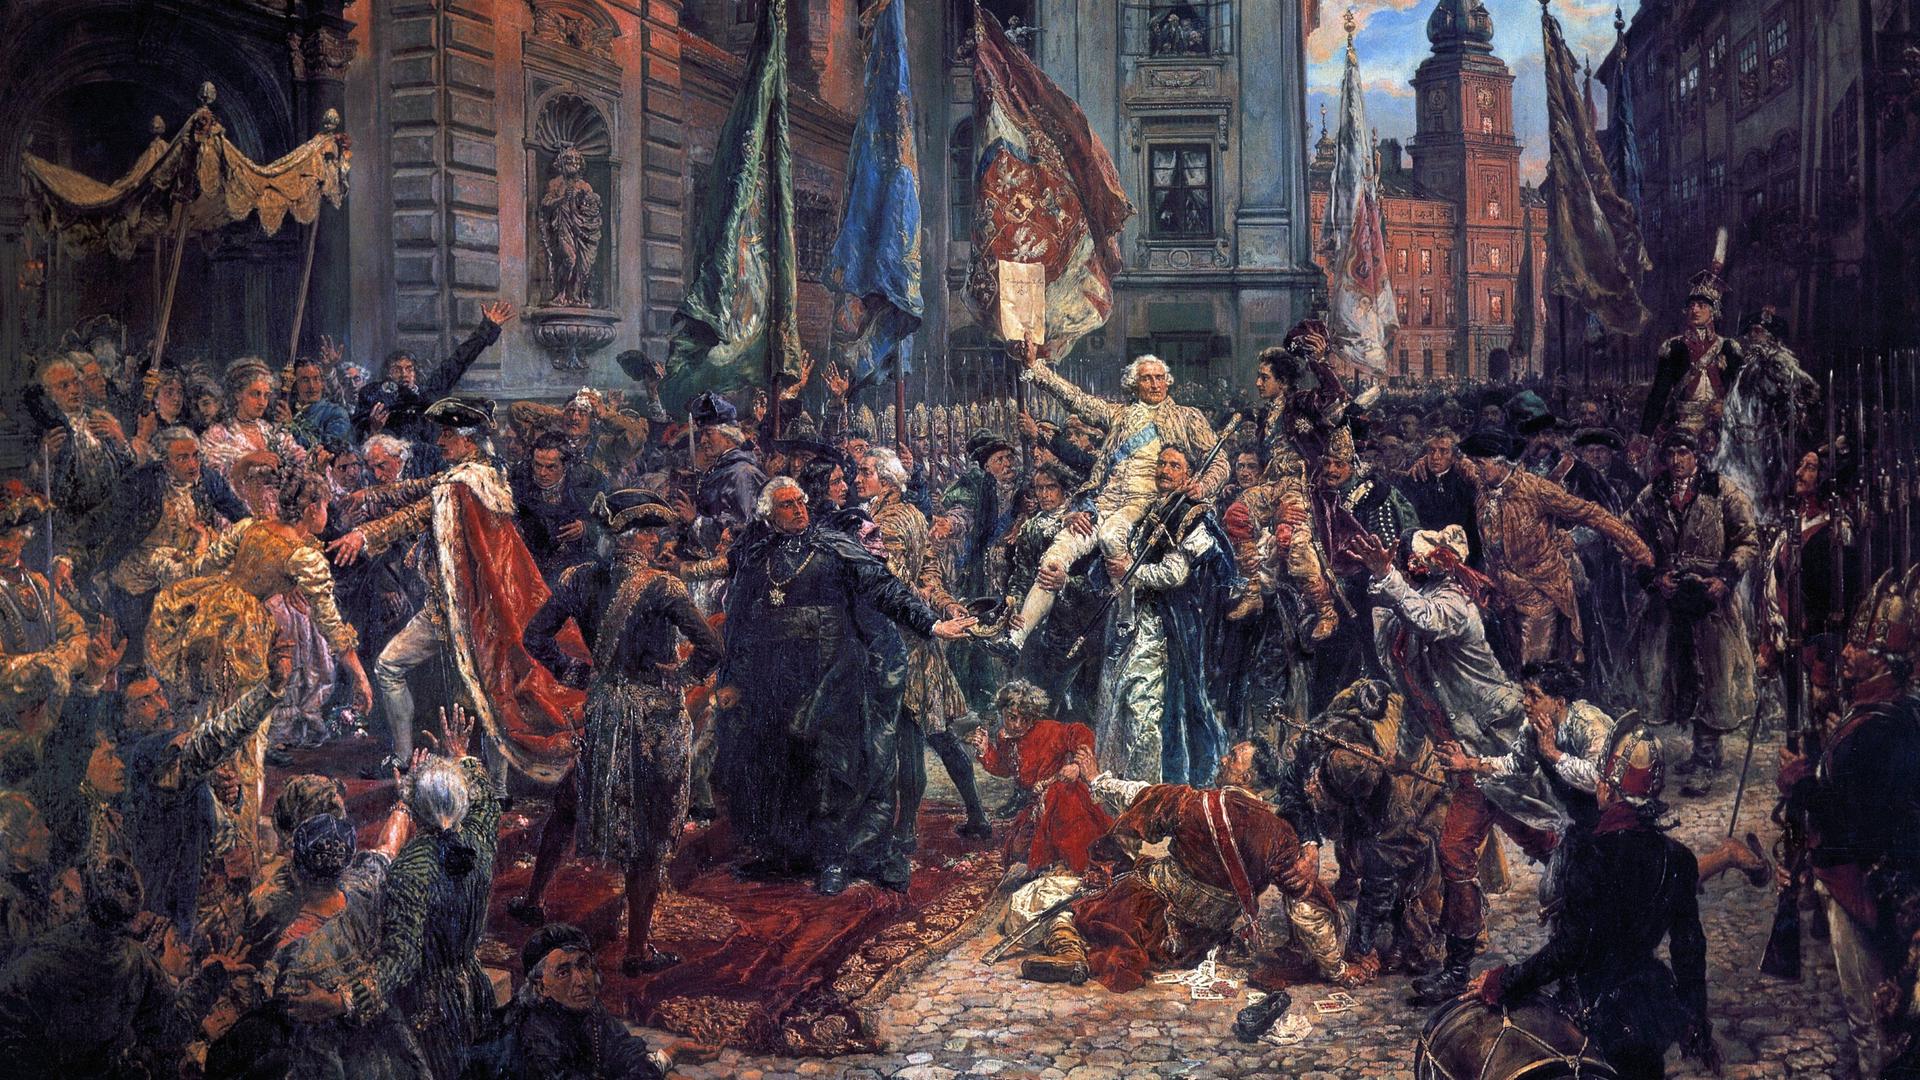 Mai 1791 in Warschau. Zahlreich festlich gekleidete Menschen habe sich vor einer Kirche versammelt. 